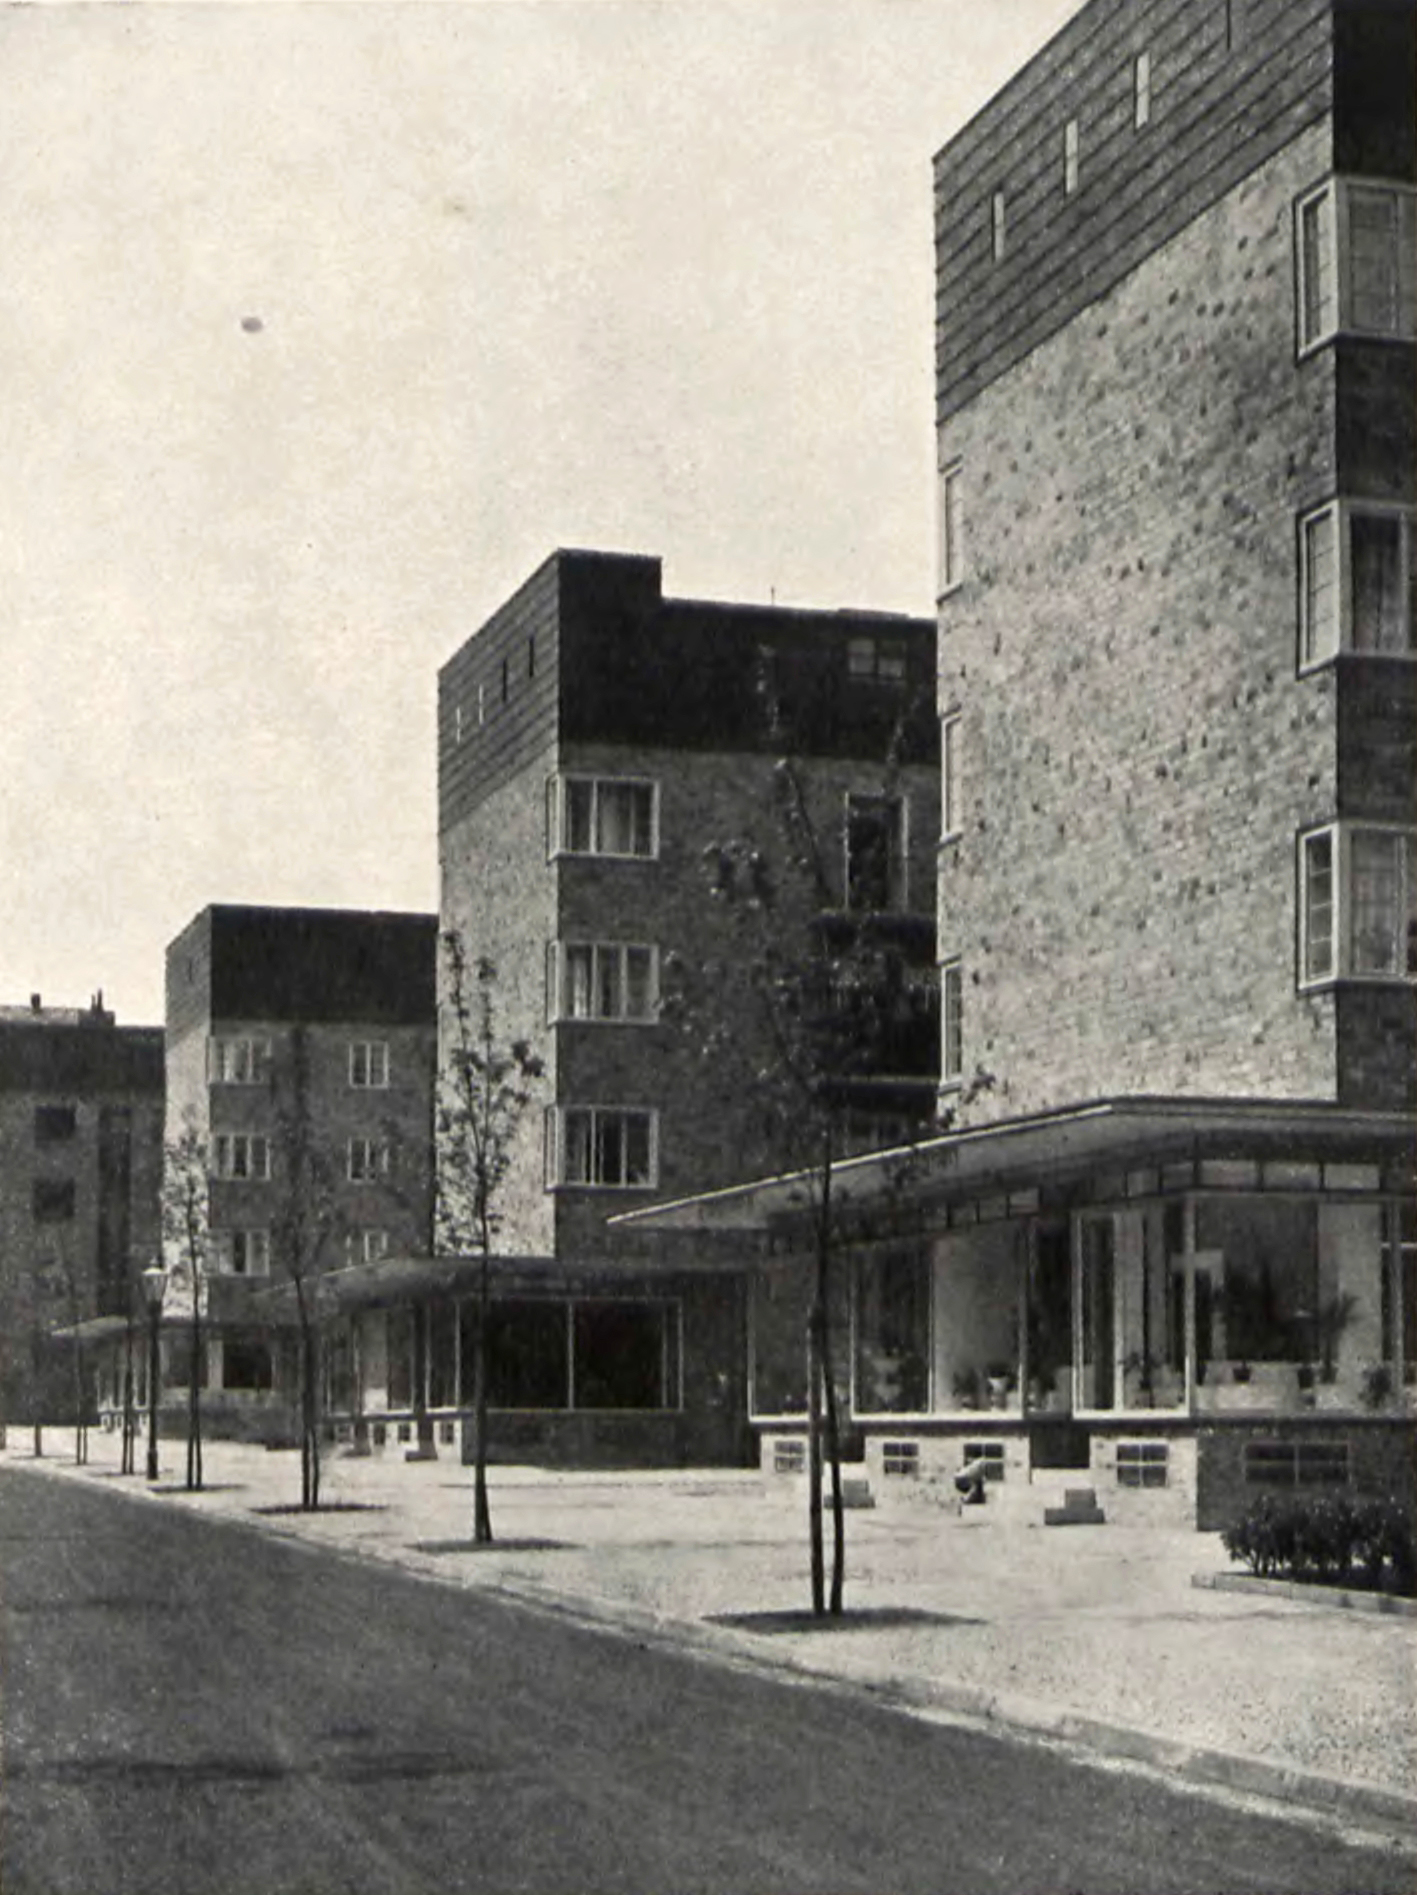 Wohnungsbau an der Helmholtz-Bunsenstraße im Stil der Neuen Sachlichkeit. Typisch für die späten 1920er Jahre.